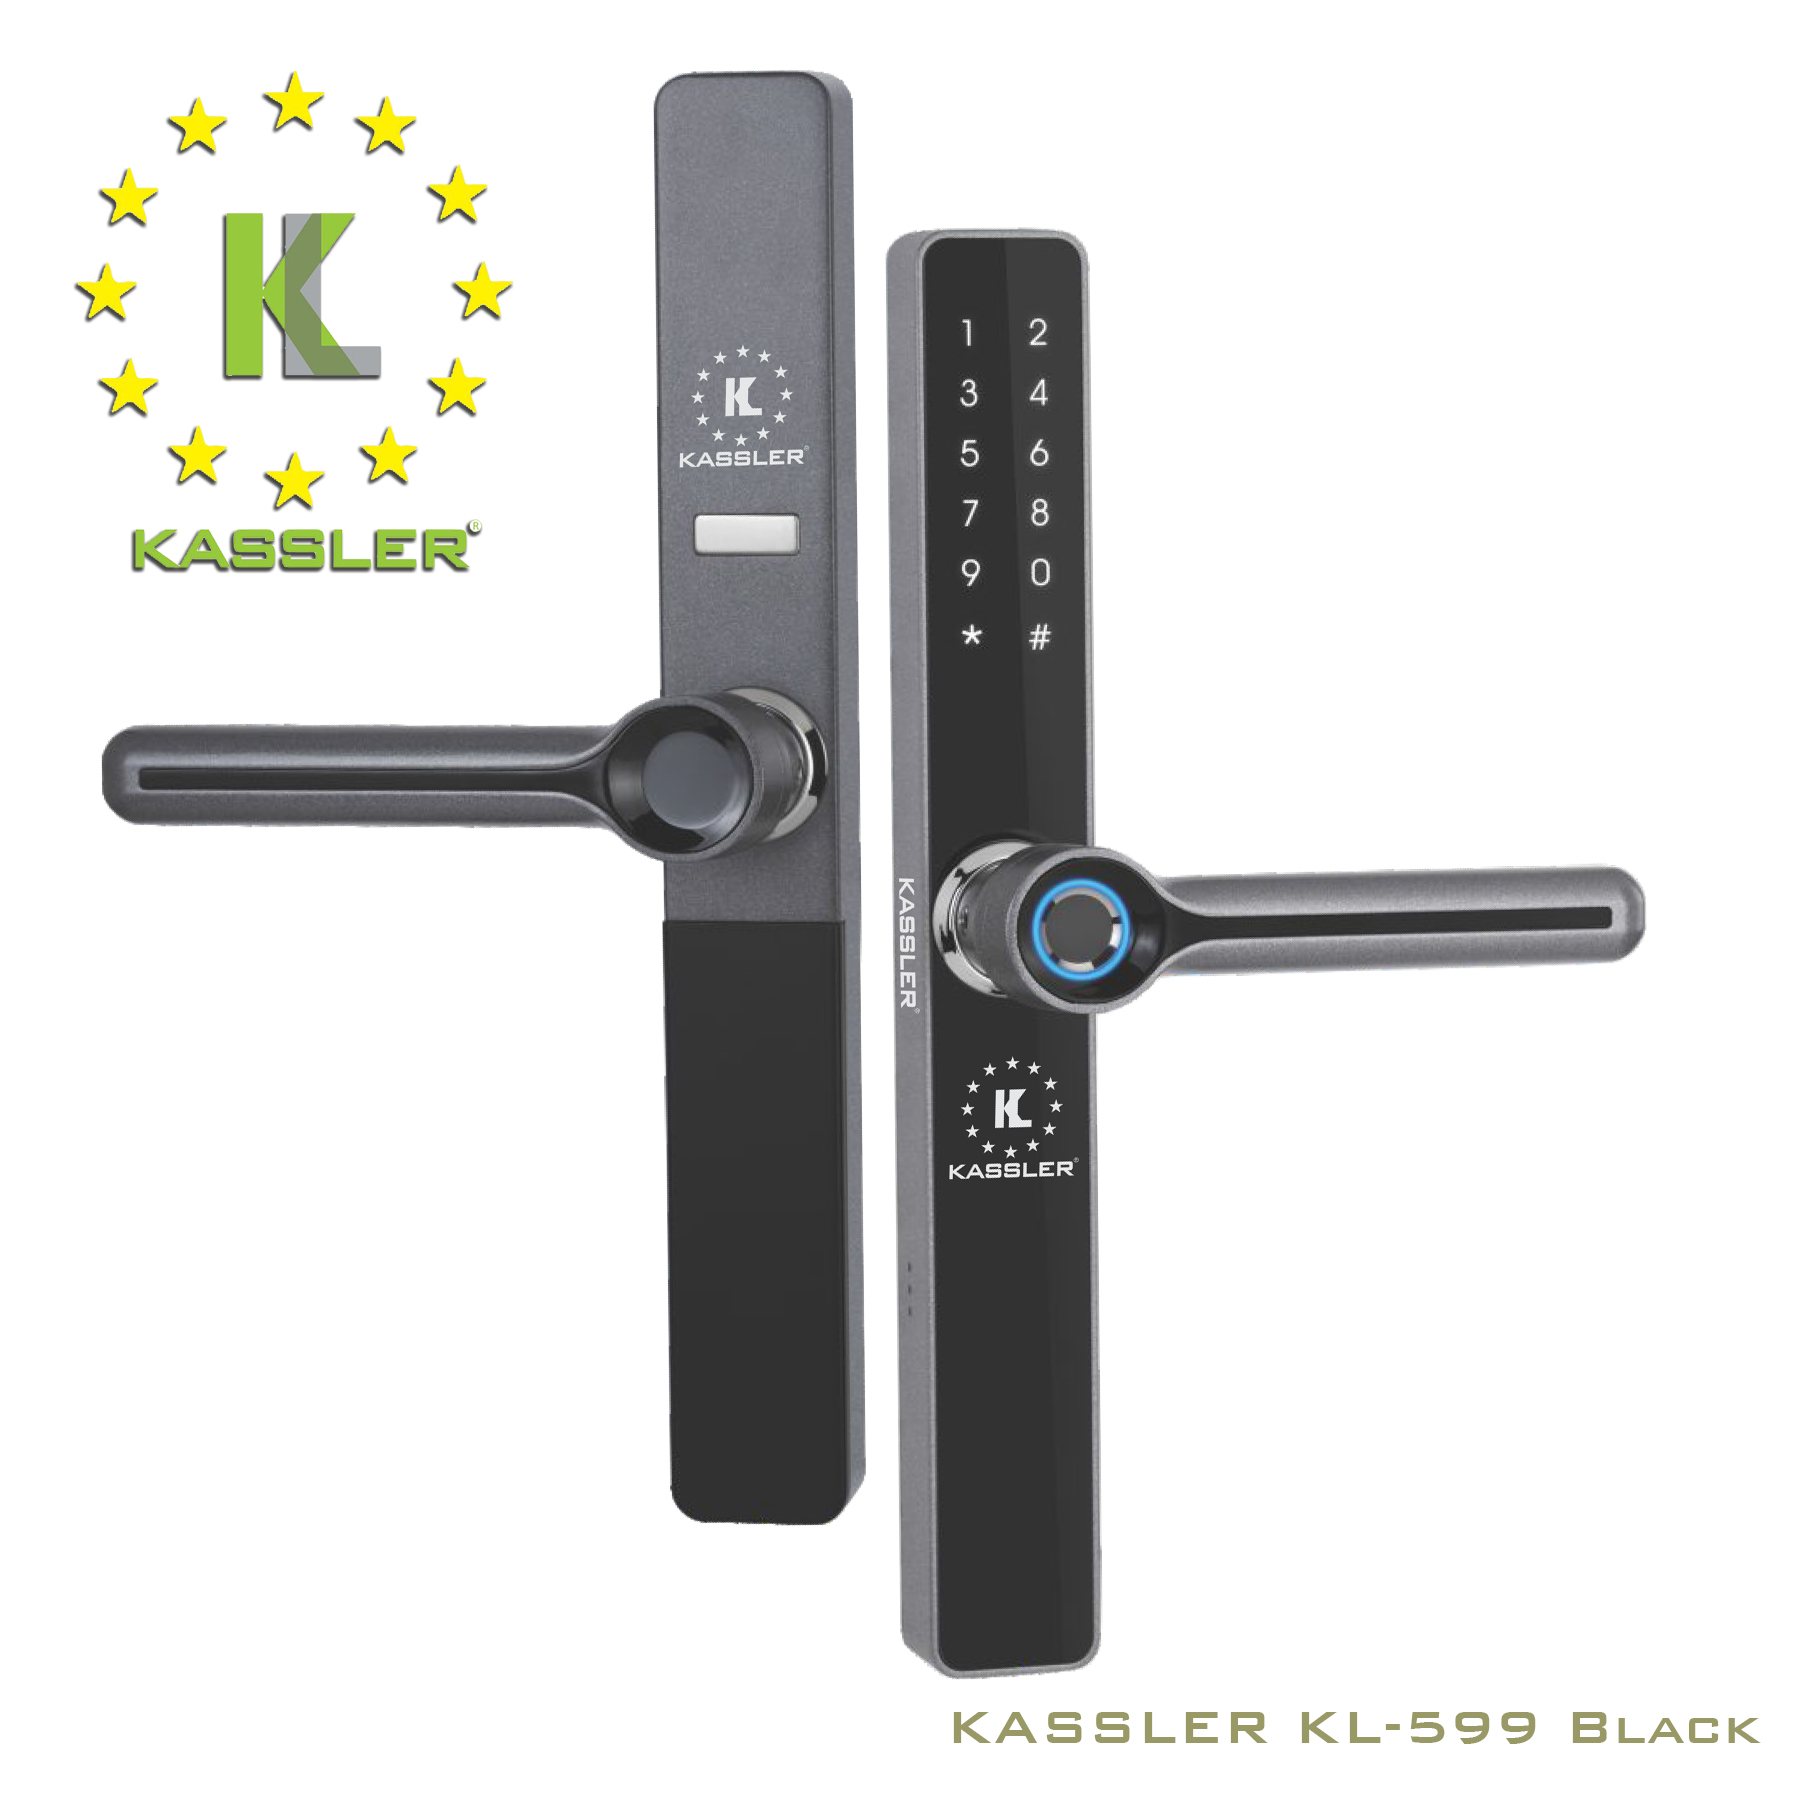 Khóa cửa Kassler Kl-599 được làm từ vật liệu cao cấp, bền bỉ